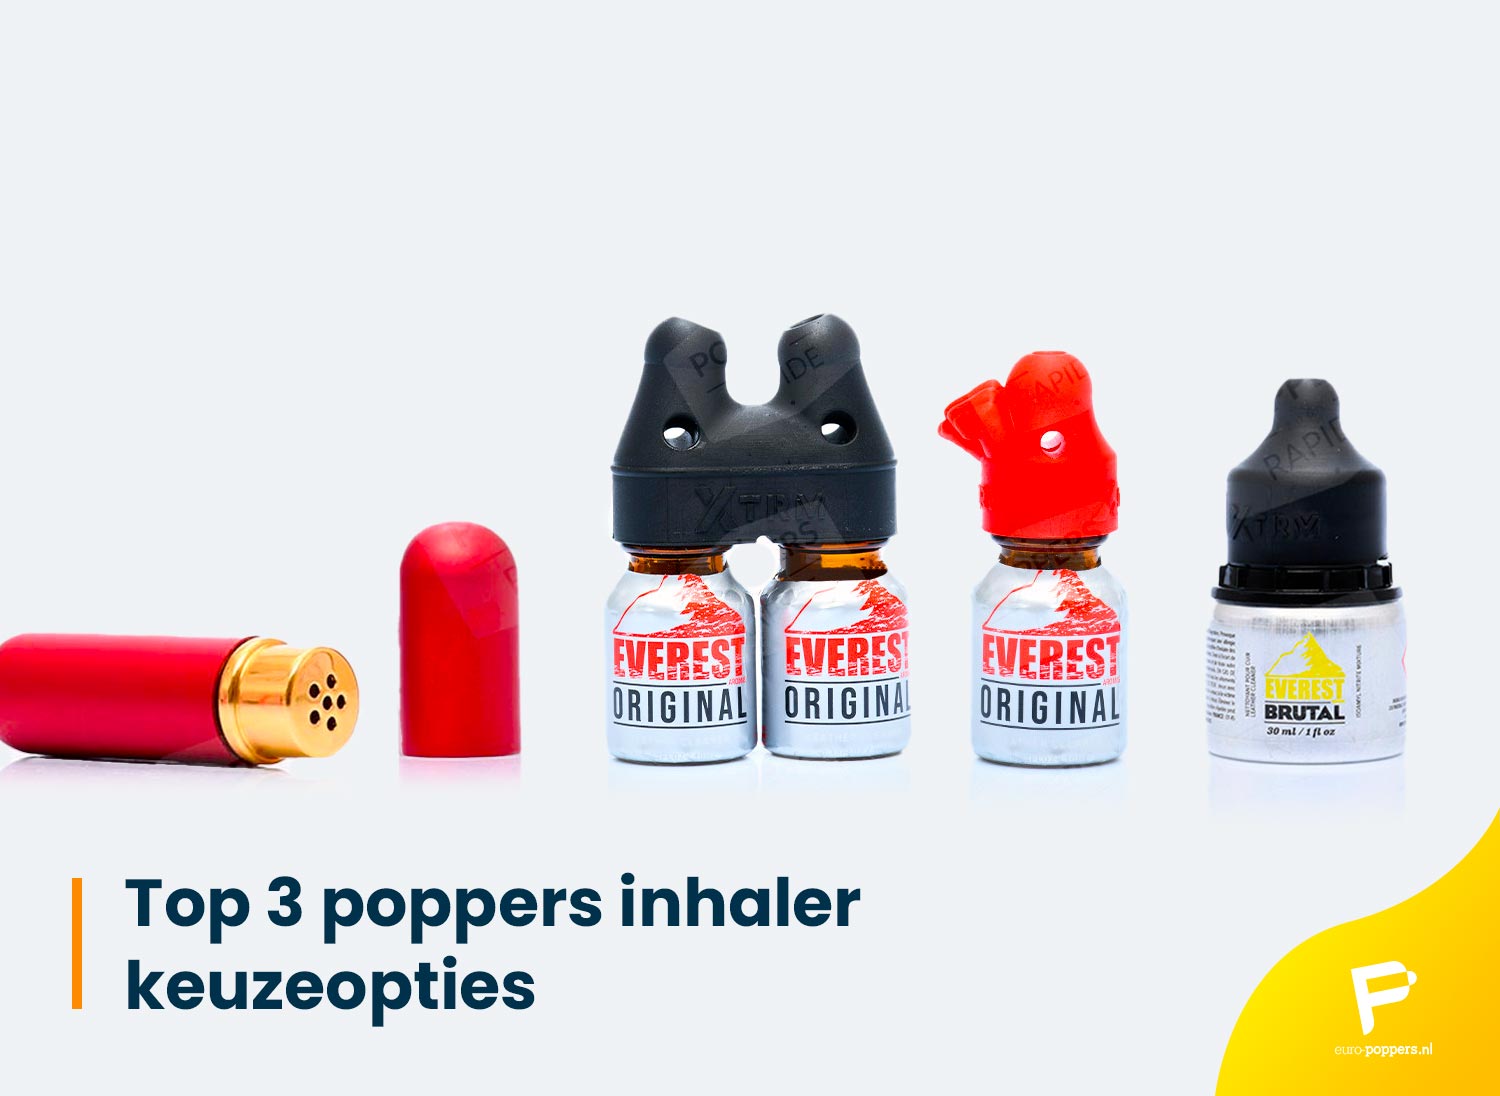 Je bekijkt nu Top 3 poppers inhaler keuzeopties